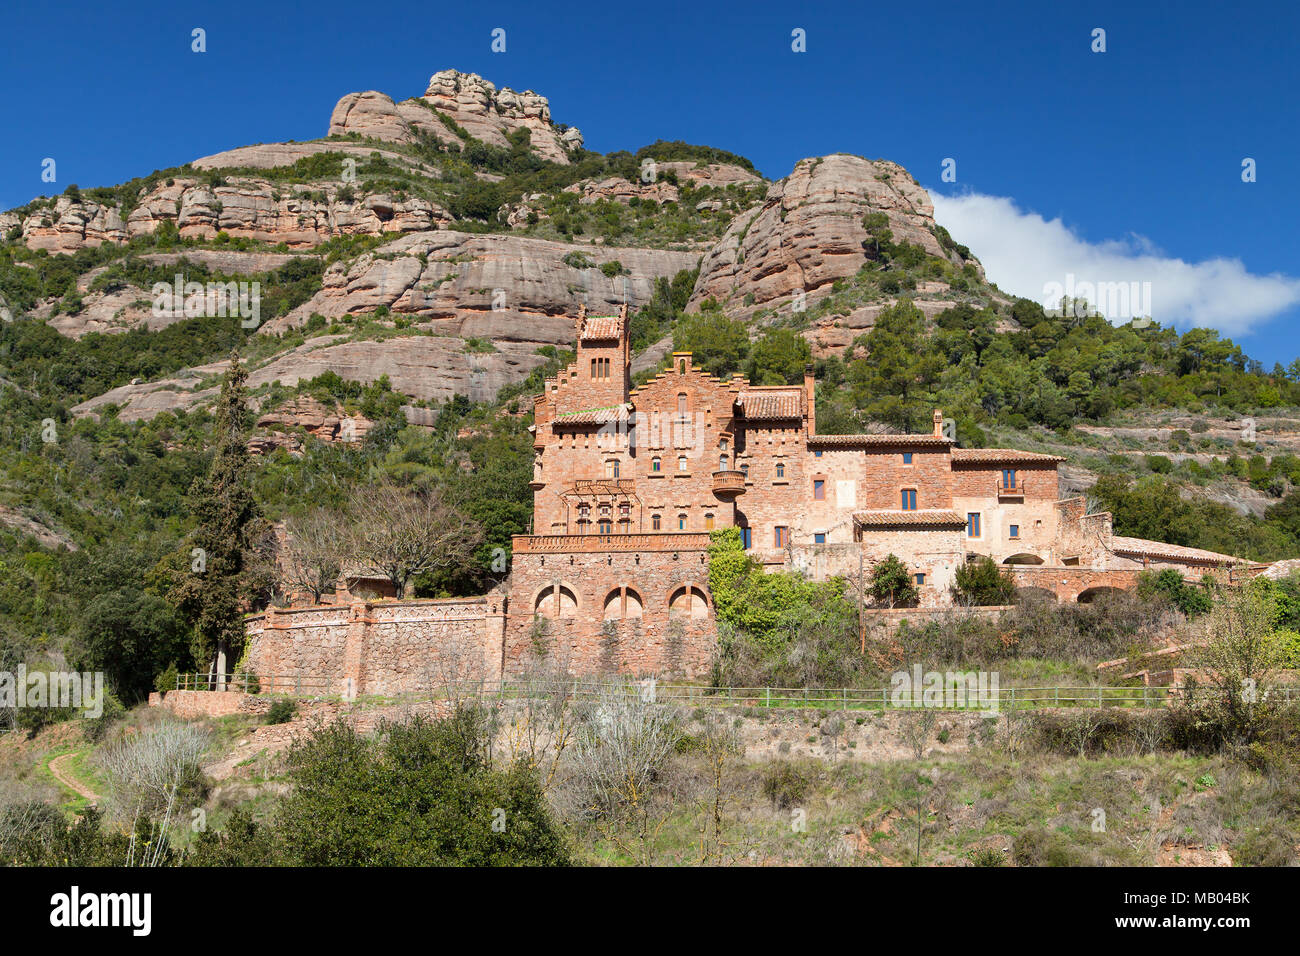 Modernist Masia of Marquet de la Roca in Sant Llorenc Savall, Barcelona province, Catalonia. Stock Photo